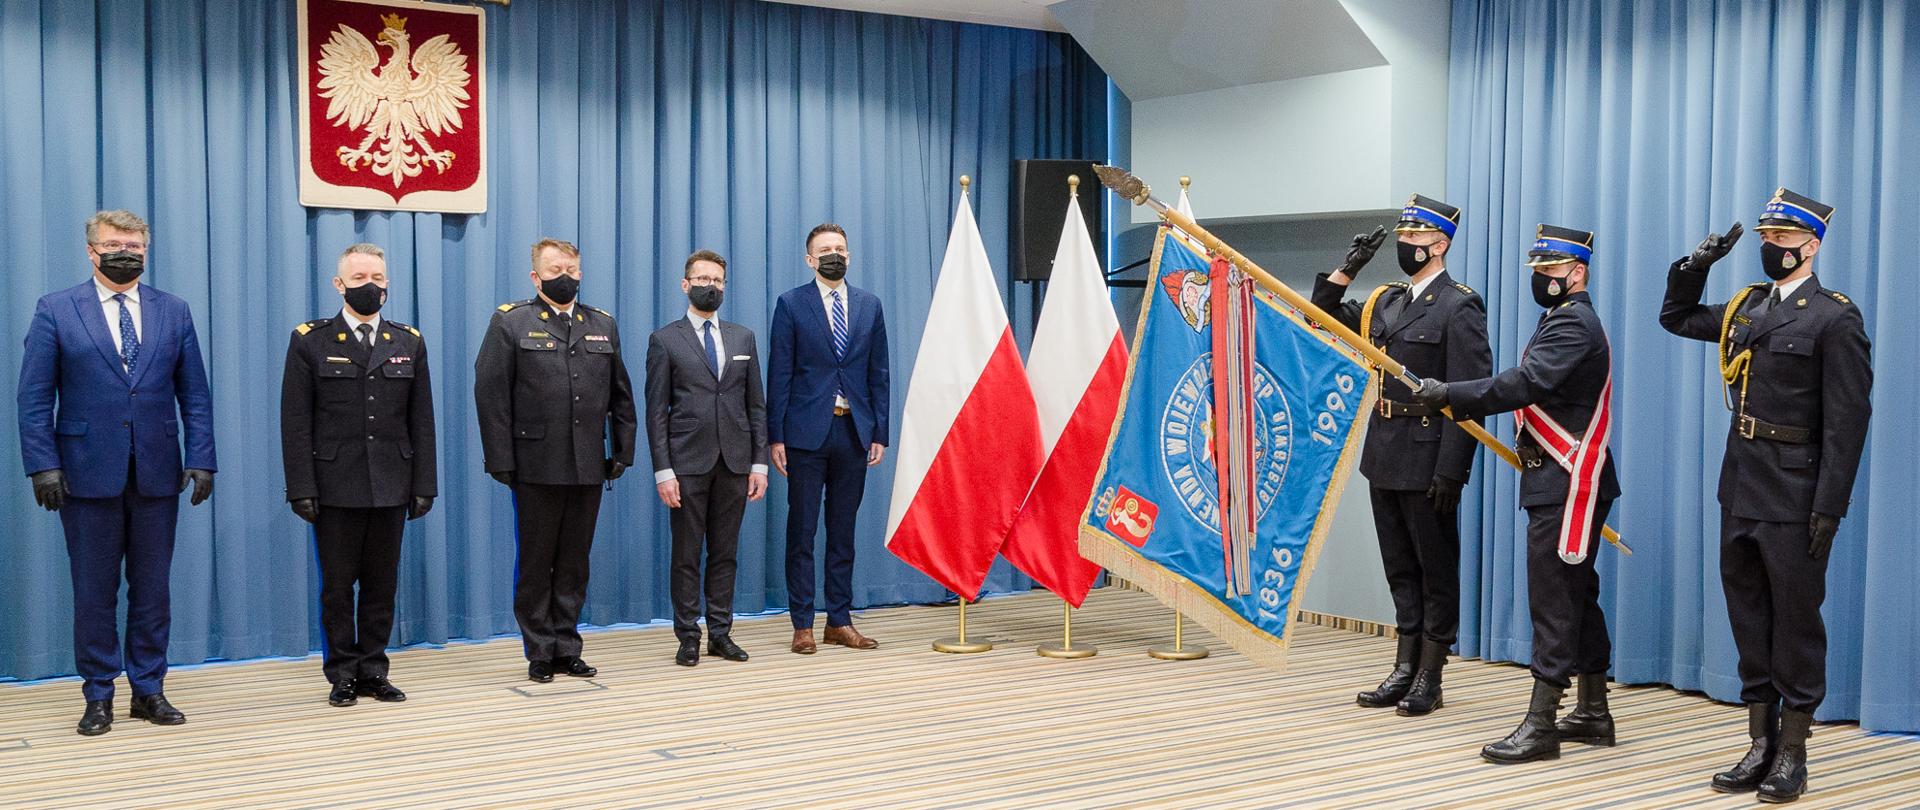 Na zdjęciu widac zaproszonych gości oraz poczet sztandarowy i trzy flagi polski